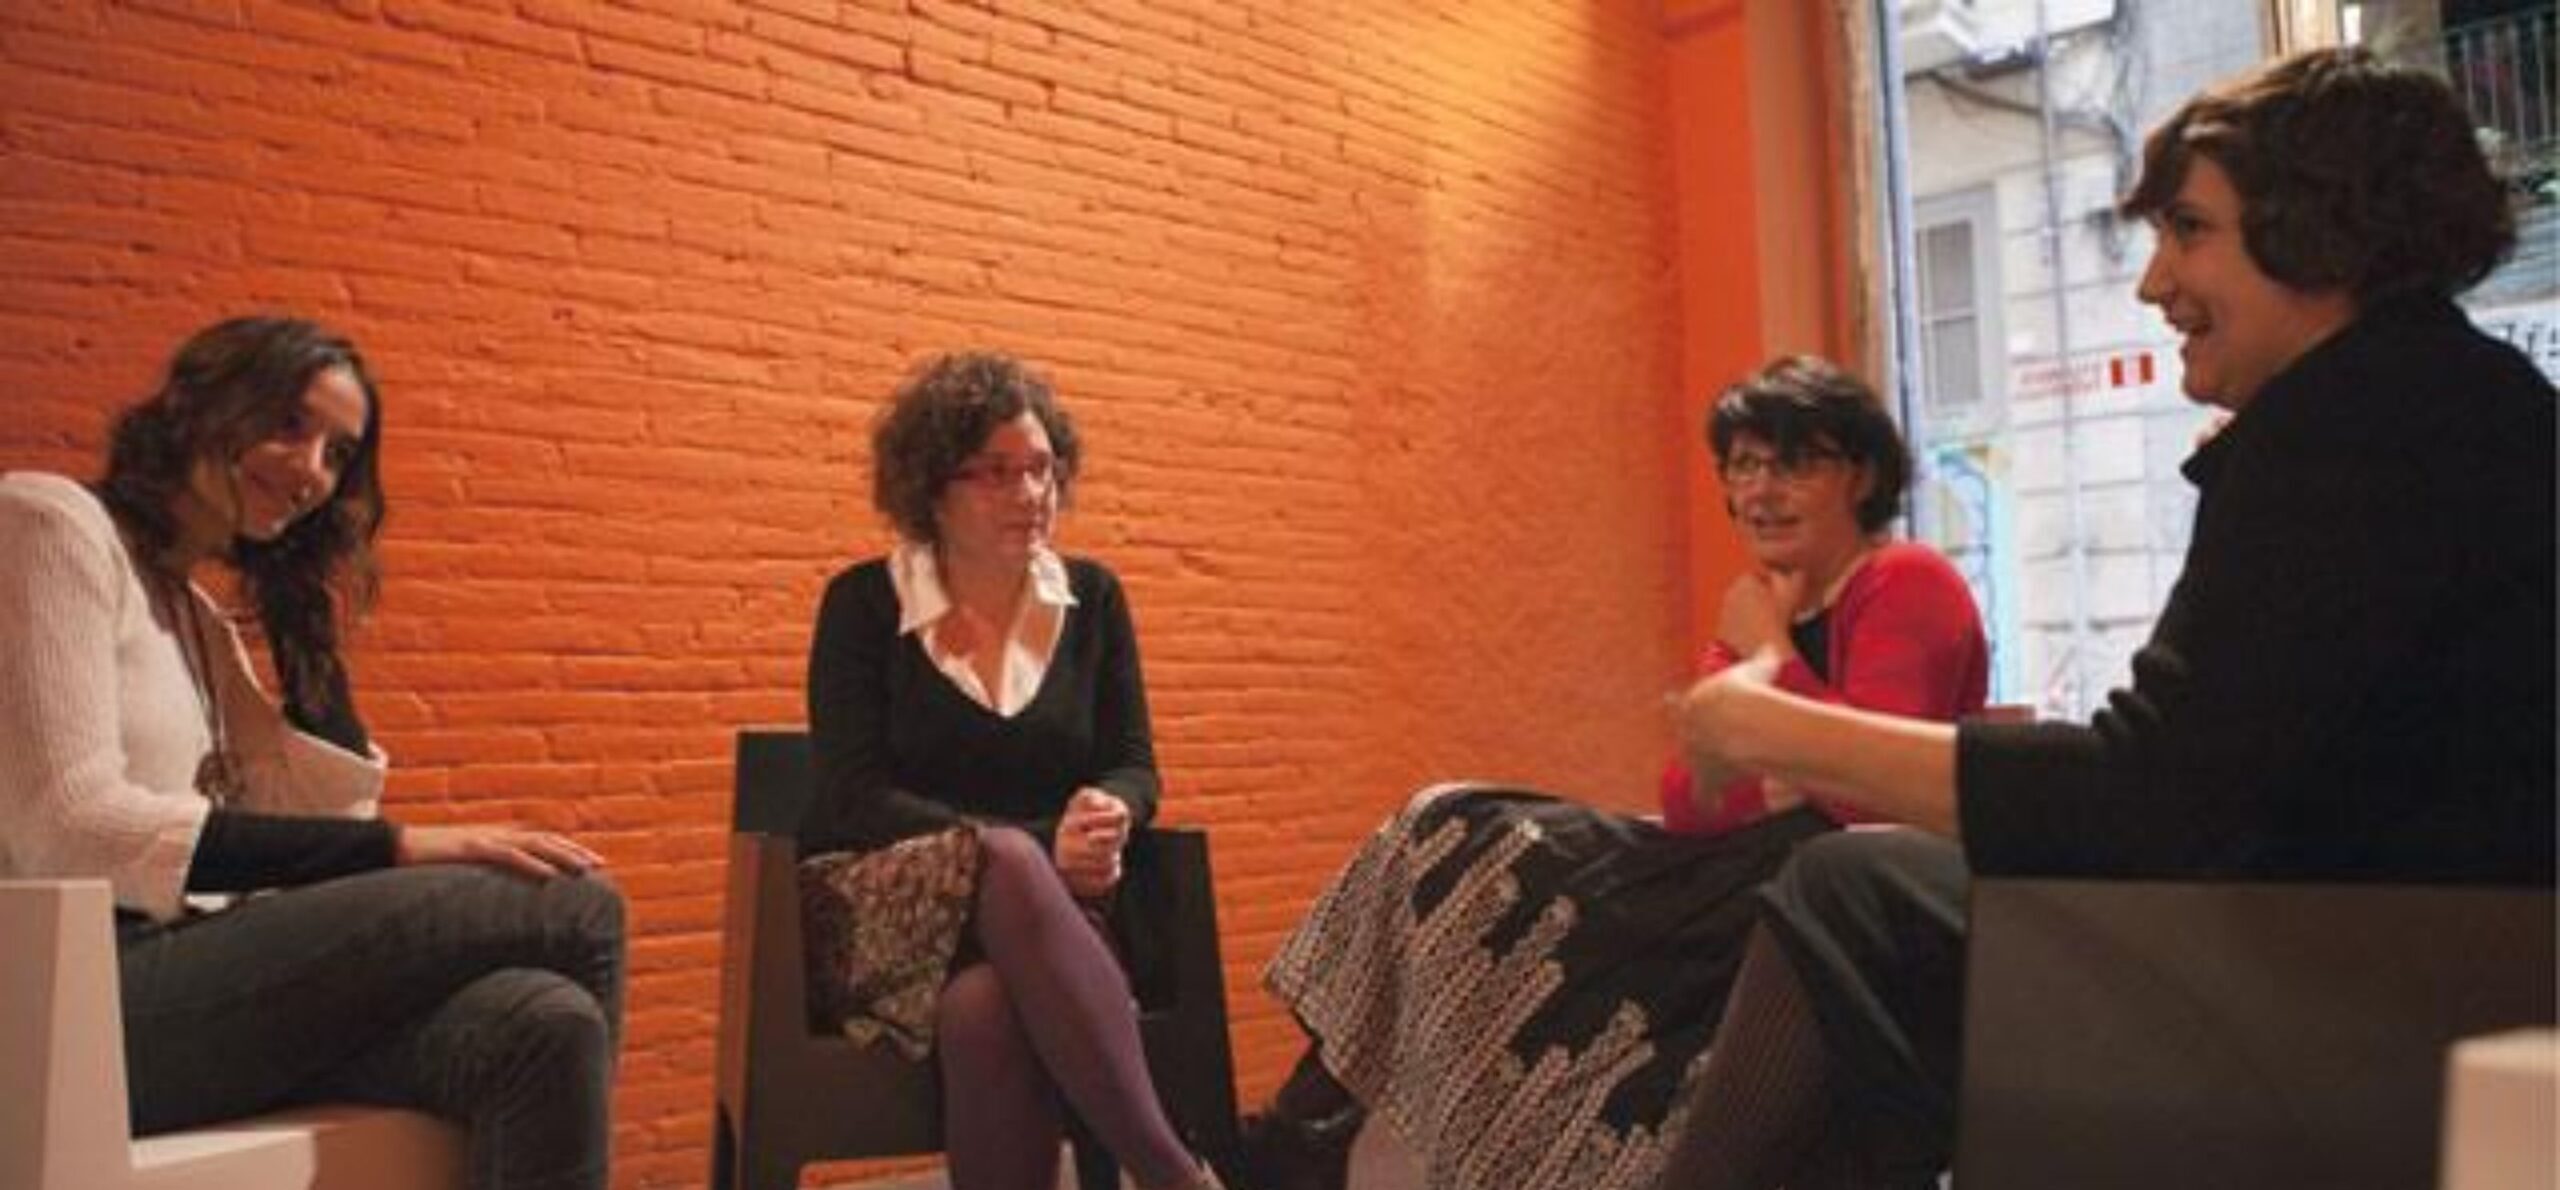 Blanca Llum Vidal, servidora, Imma Monsó i Marina Espasa parlant de llibres a les portes de la diada de Sant Jordi de 2012 (fotografia: Jordi Carreño).